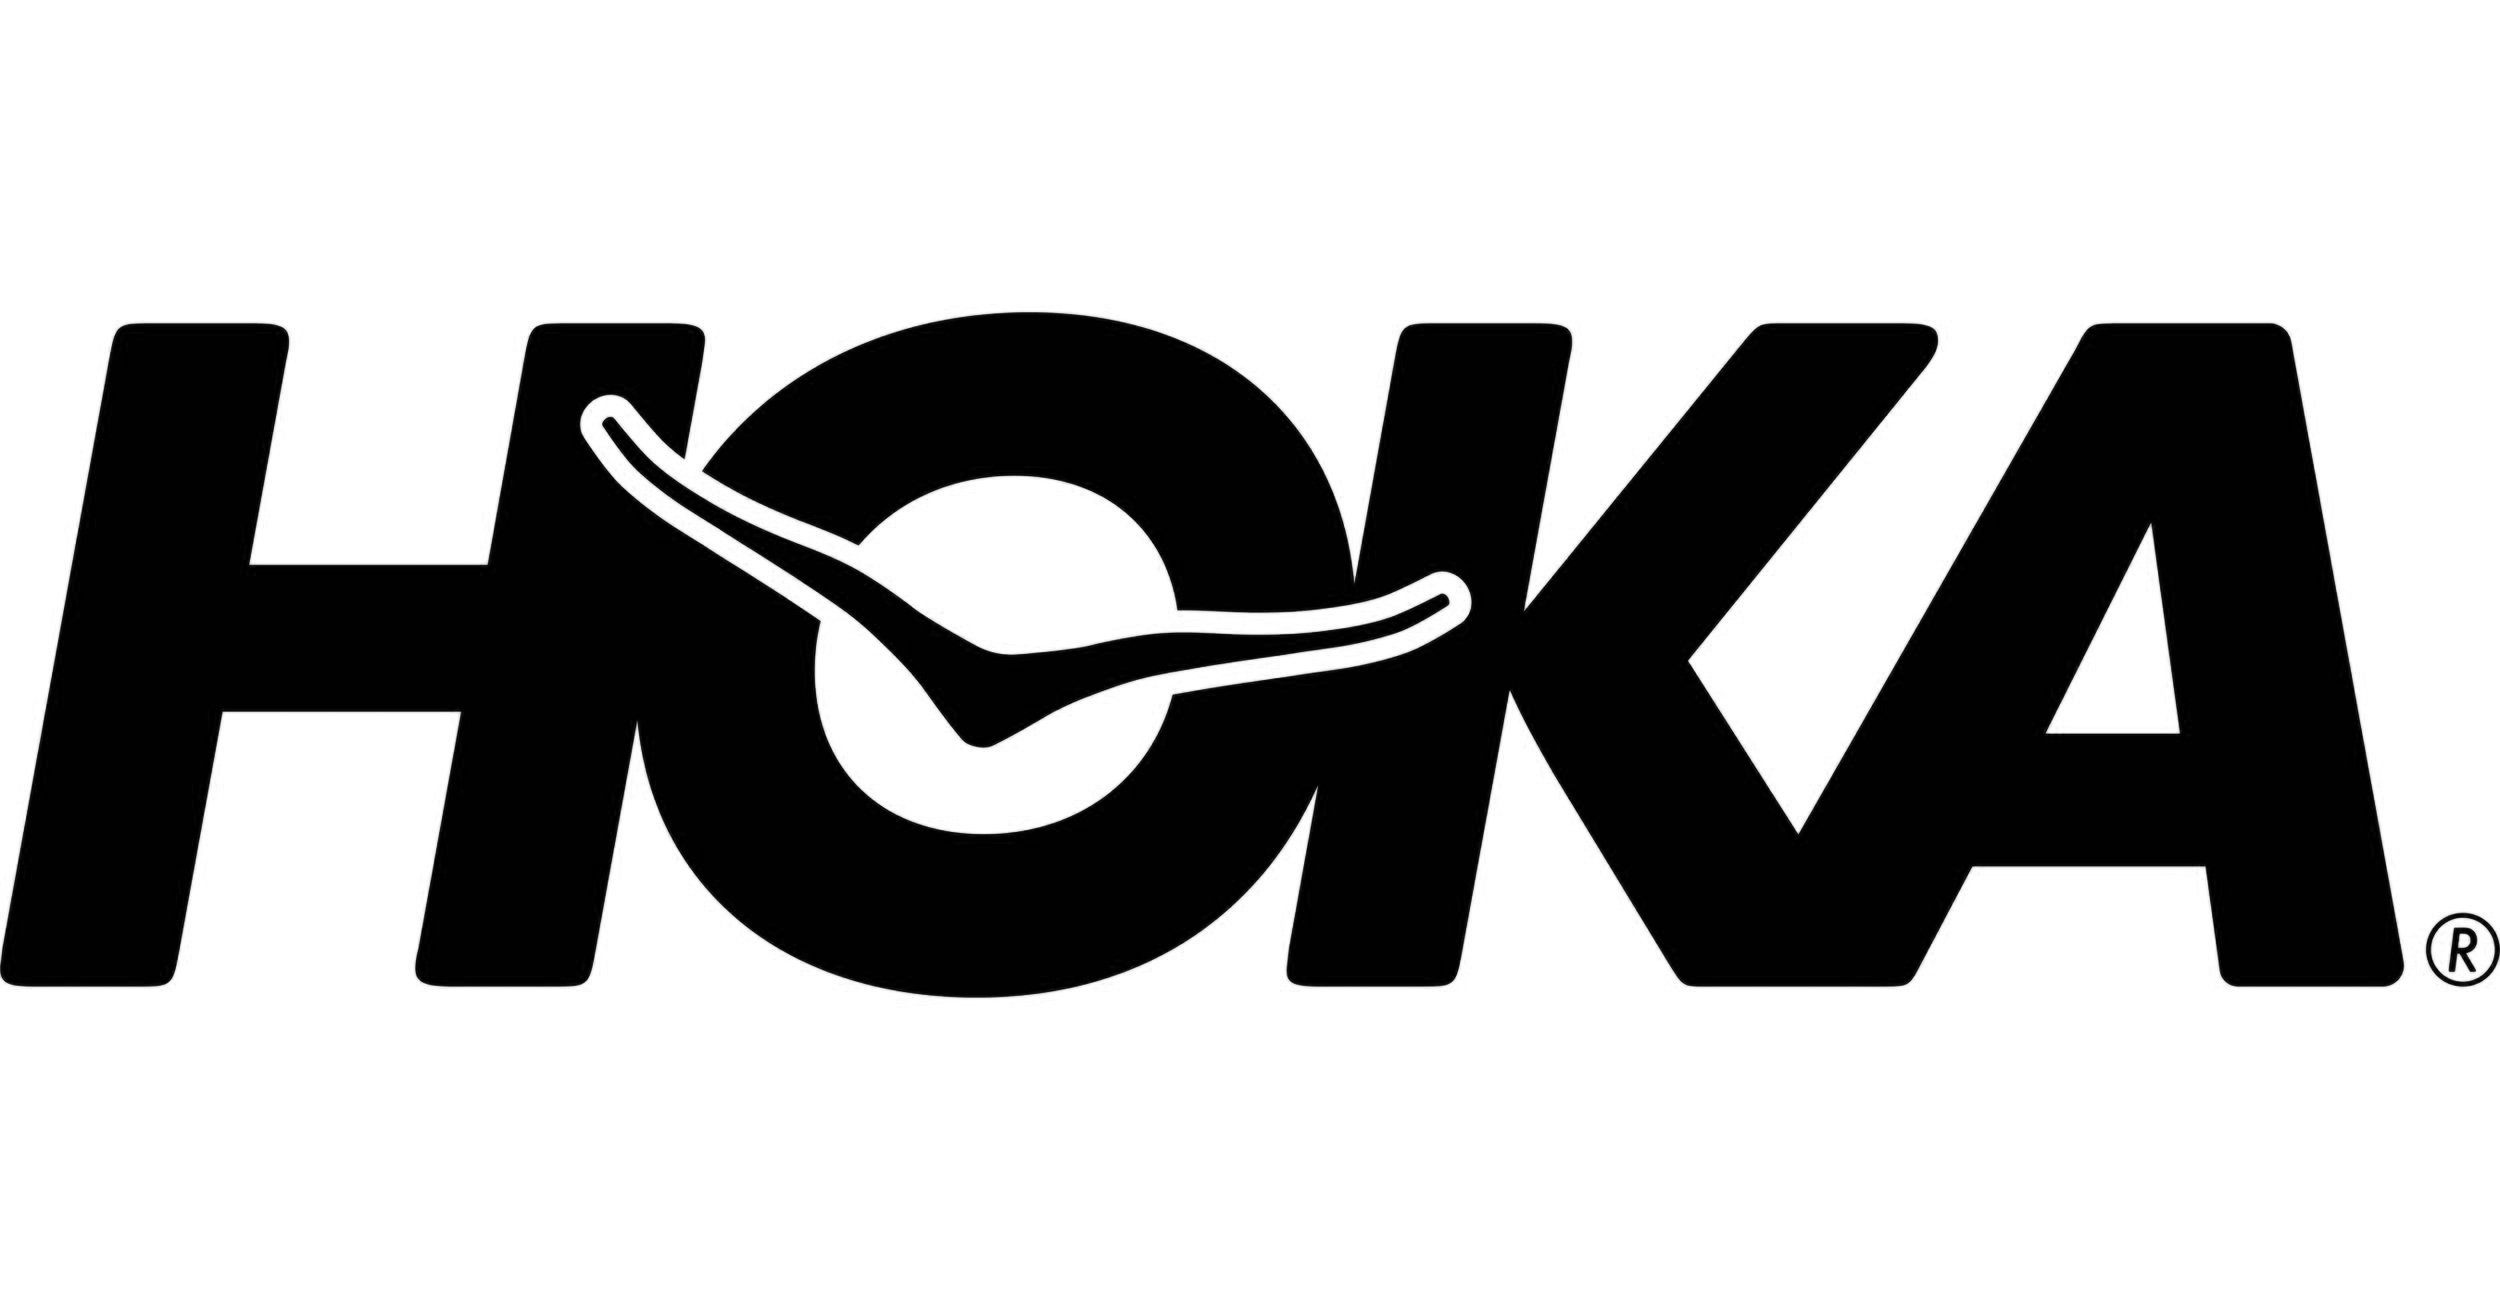 hoka_one_one___logo.jpg